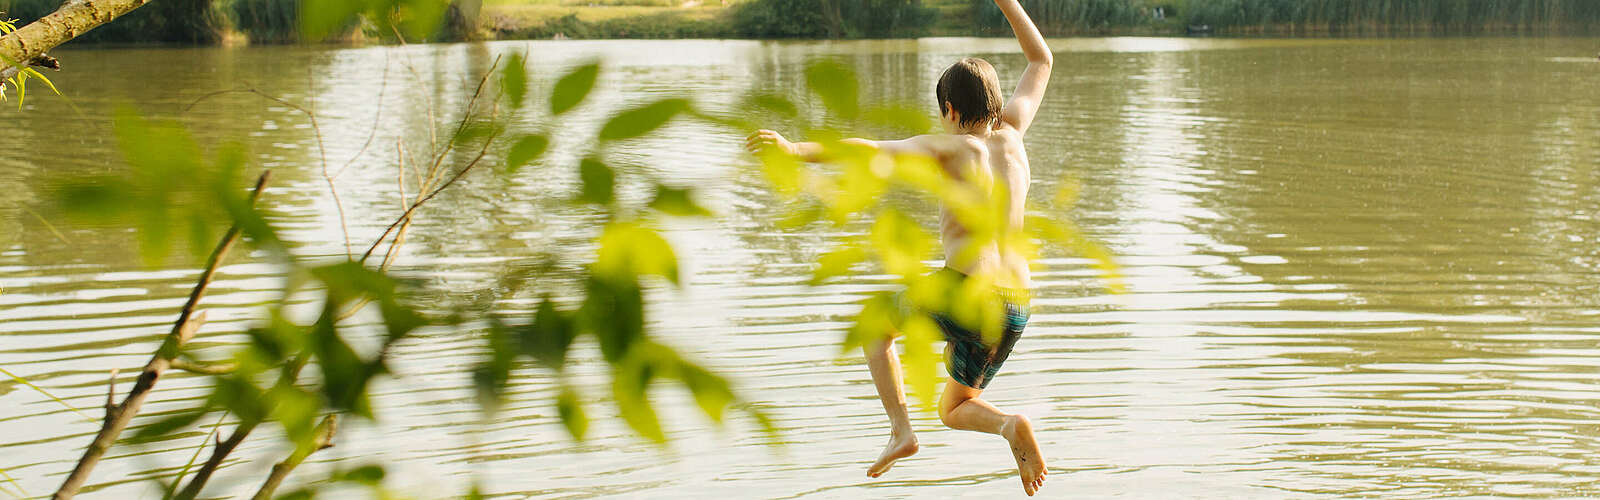 Kind springt in den Badesee,
        
    

        Foto: TMB-Fotoarchiv/Julia Nimke